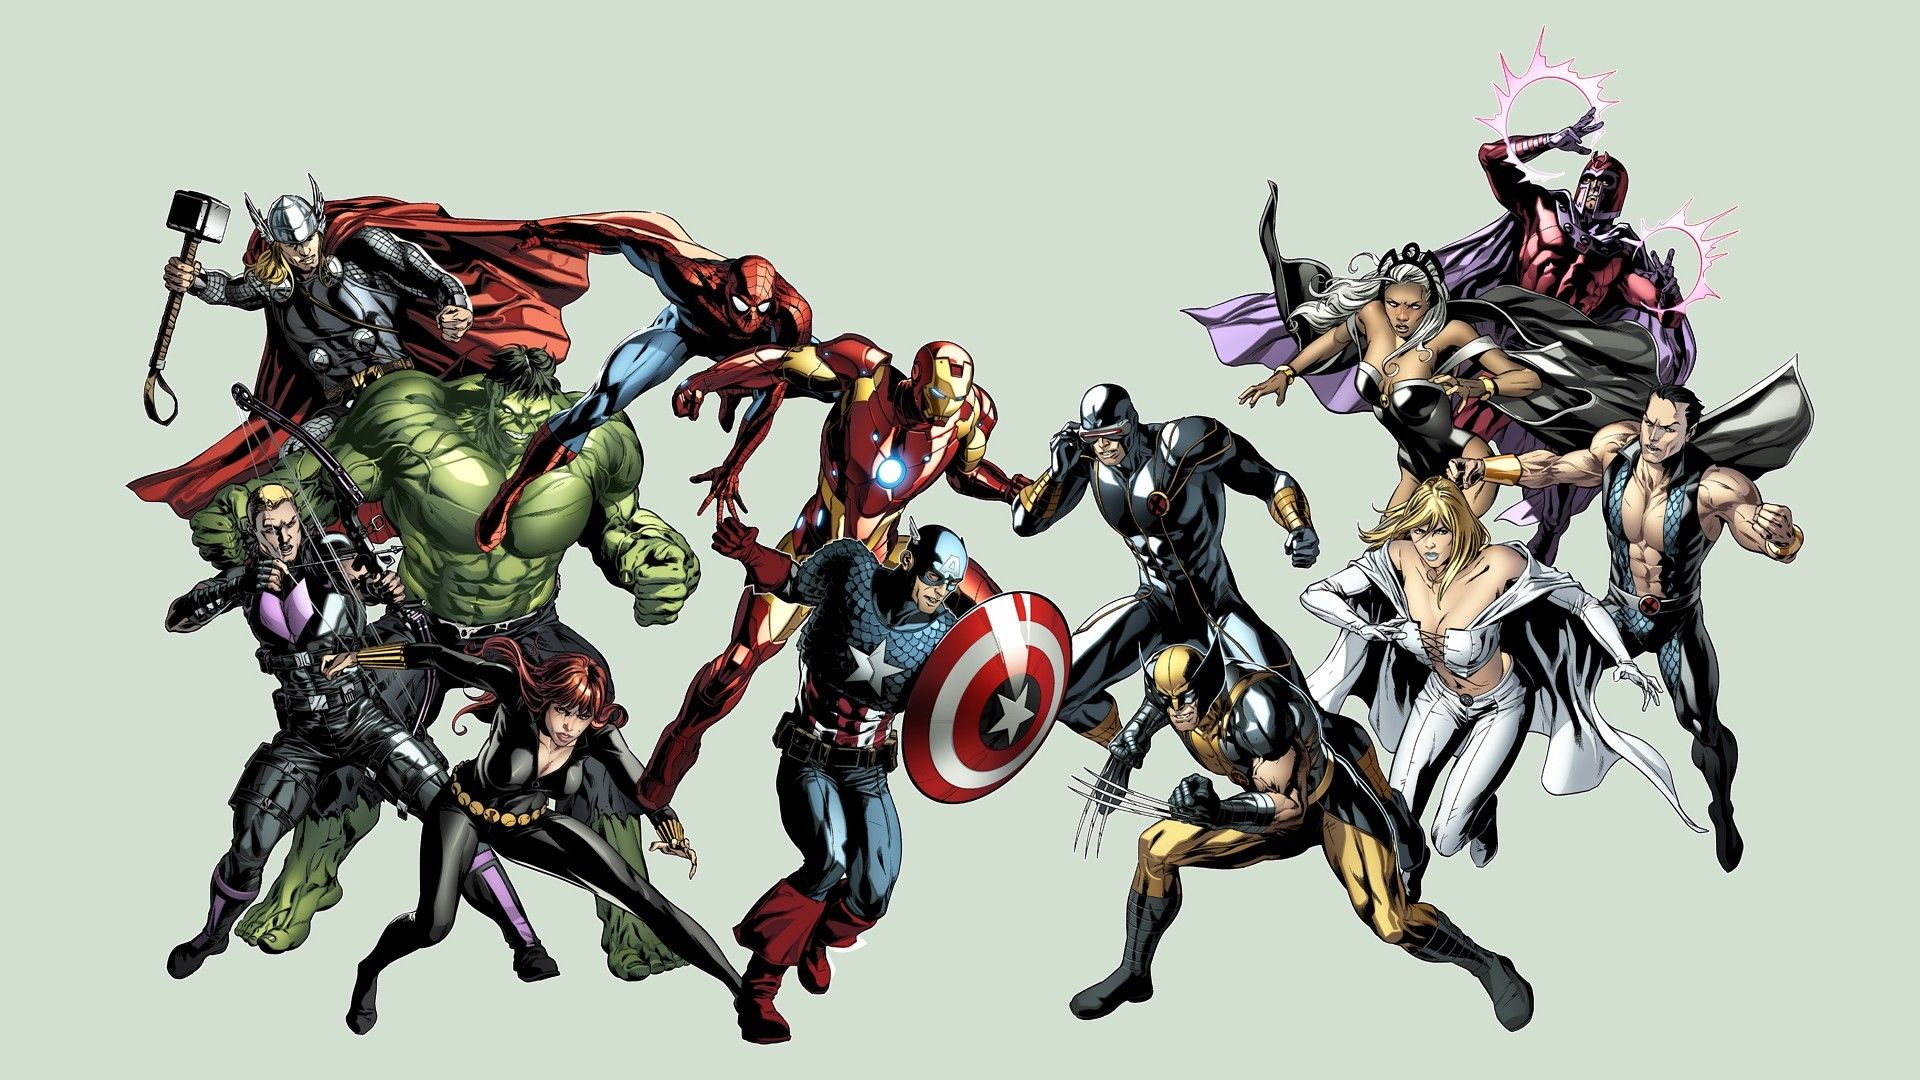 Hawkeye cyclops avengers vs x-men storm (comics wallpaper ...